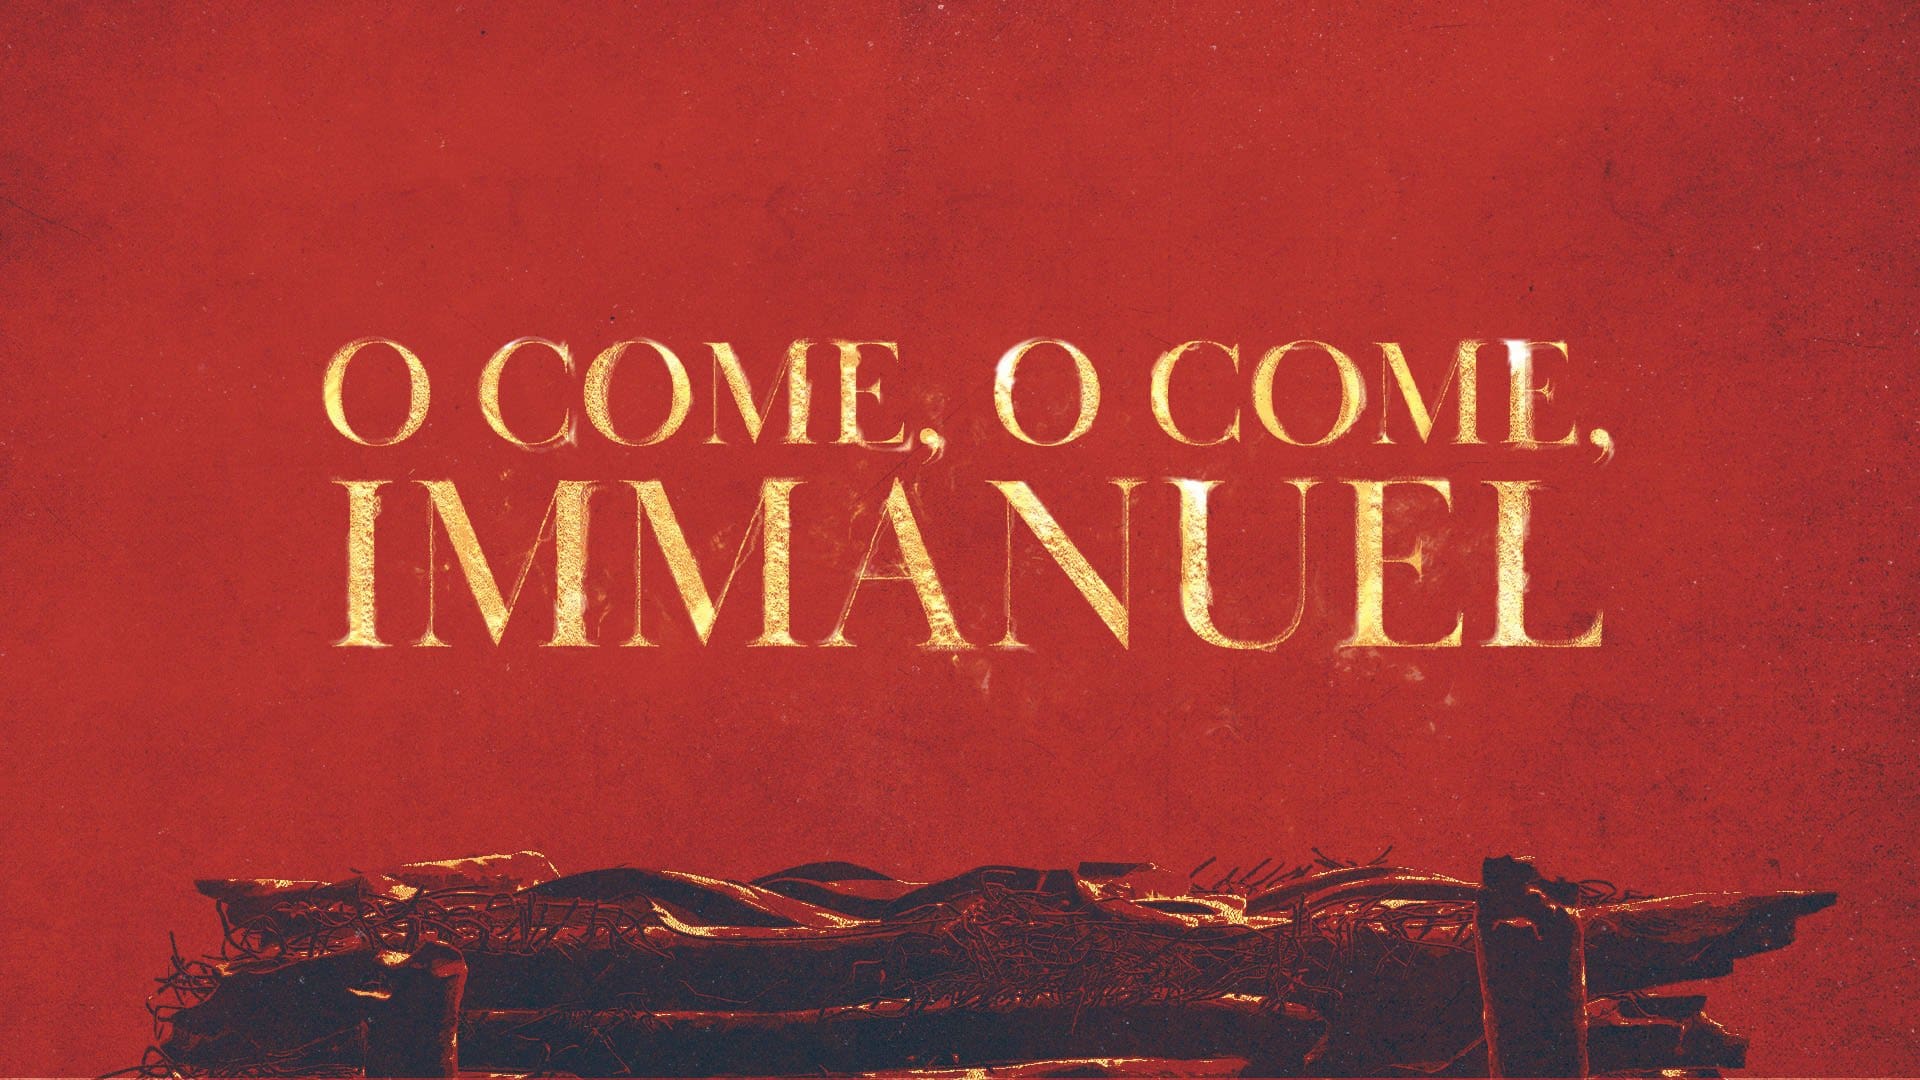 O Come, O Come, Immanuel